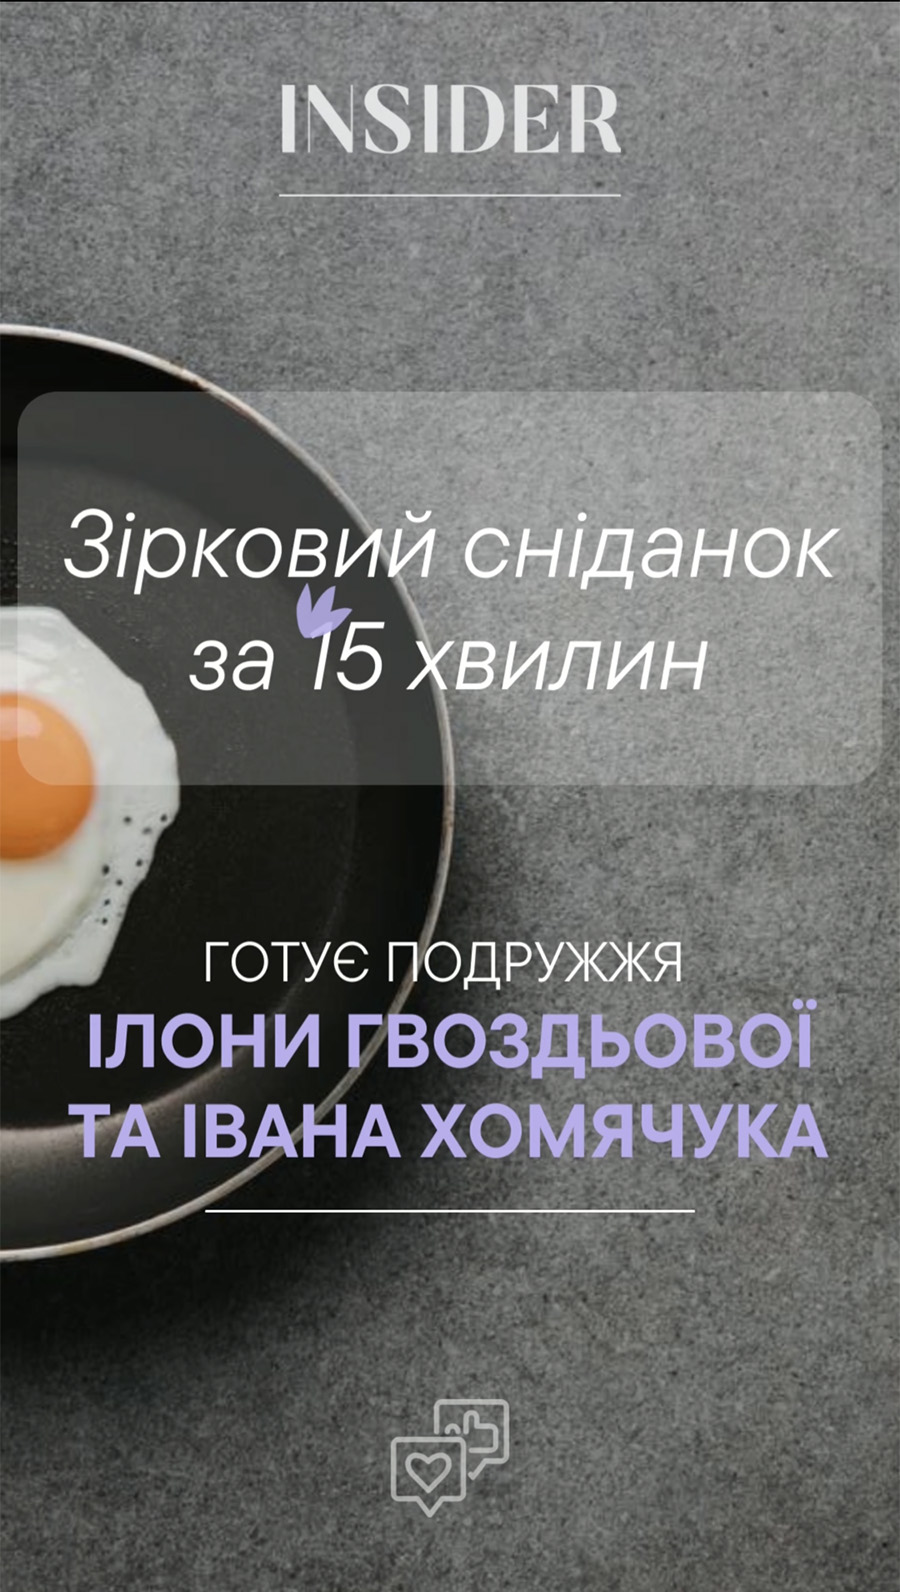 Звездный завтрак за 15 минут: готовят Илона Гвоздева и Иван Хомячук